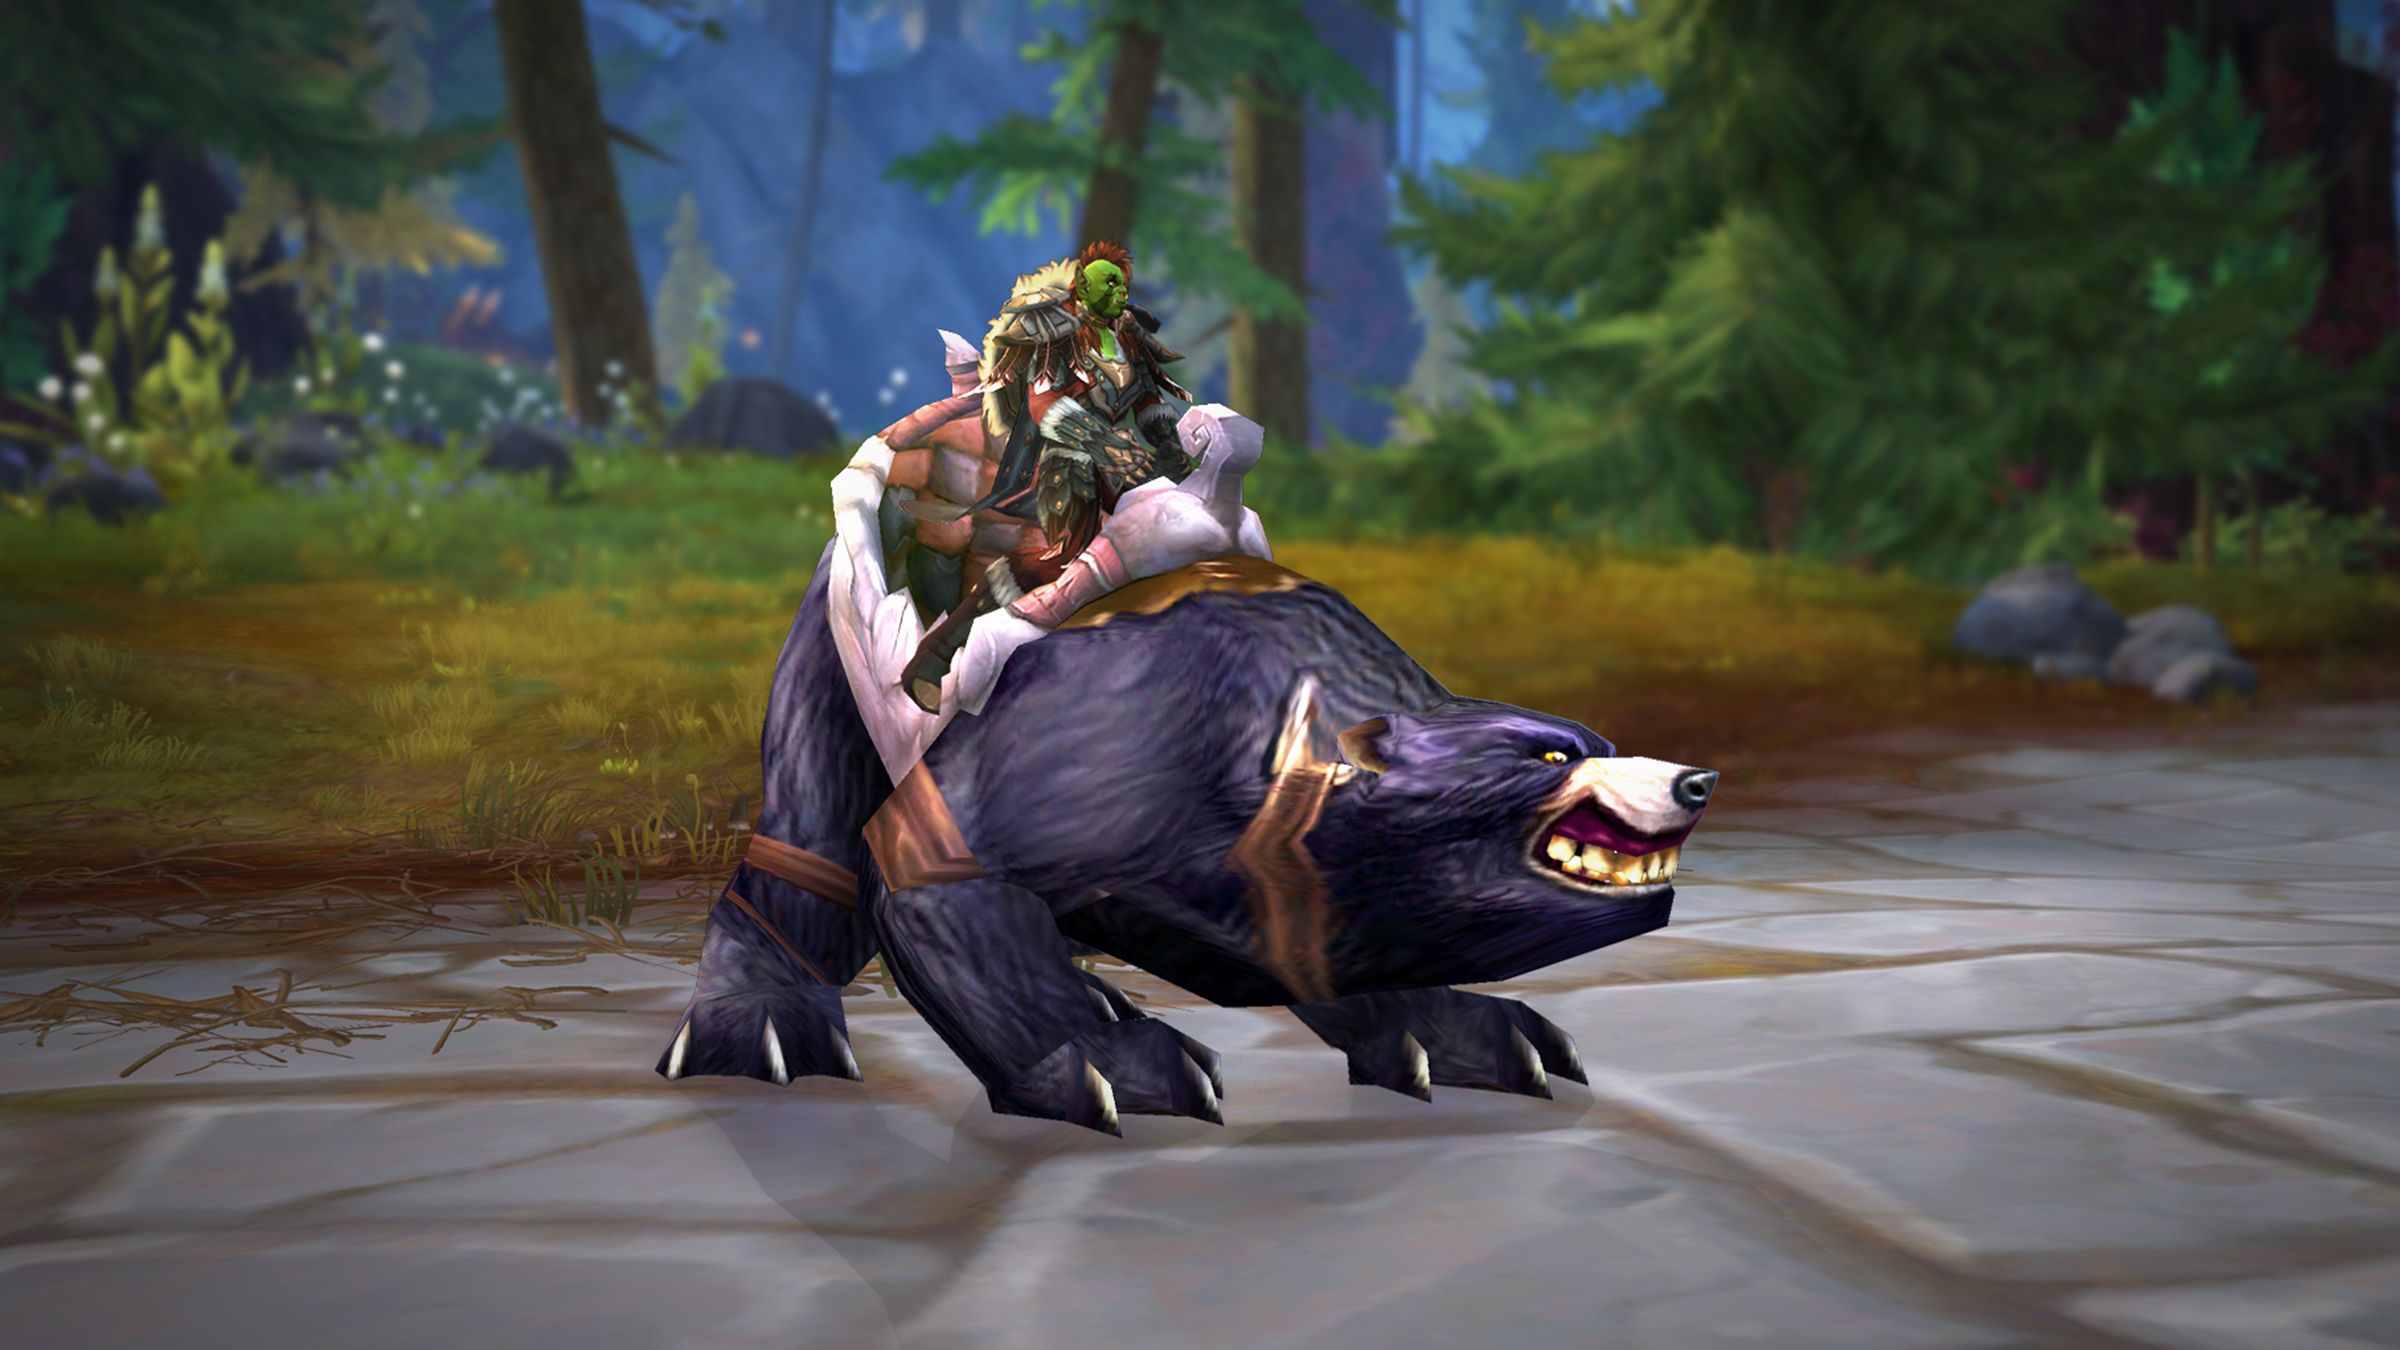 [Fin de la promotion] Butin World of Warcraft pour les membres de Prime Gaming : obtenez le Grand ours de bataille